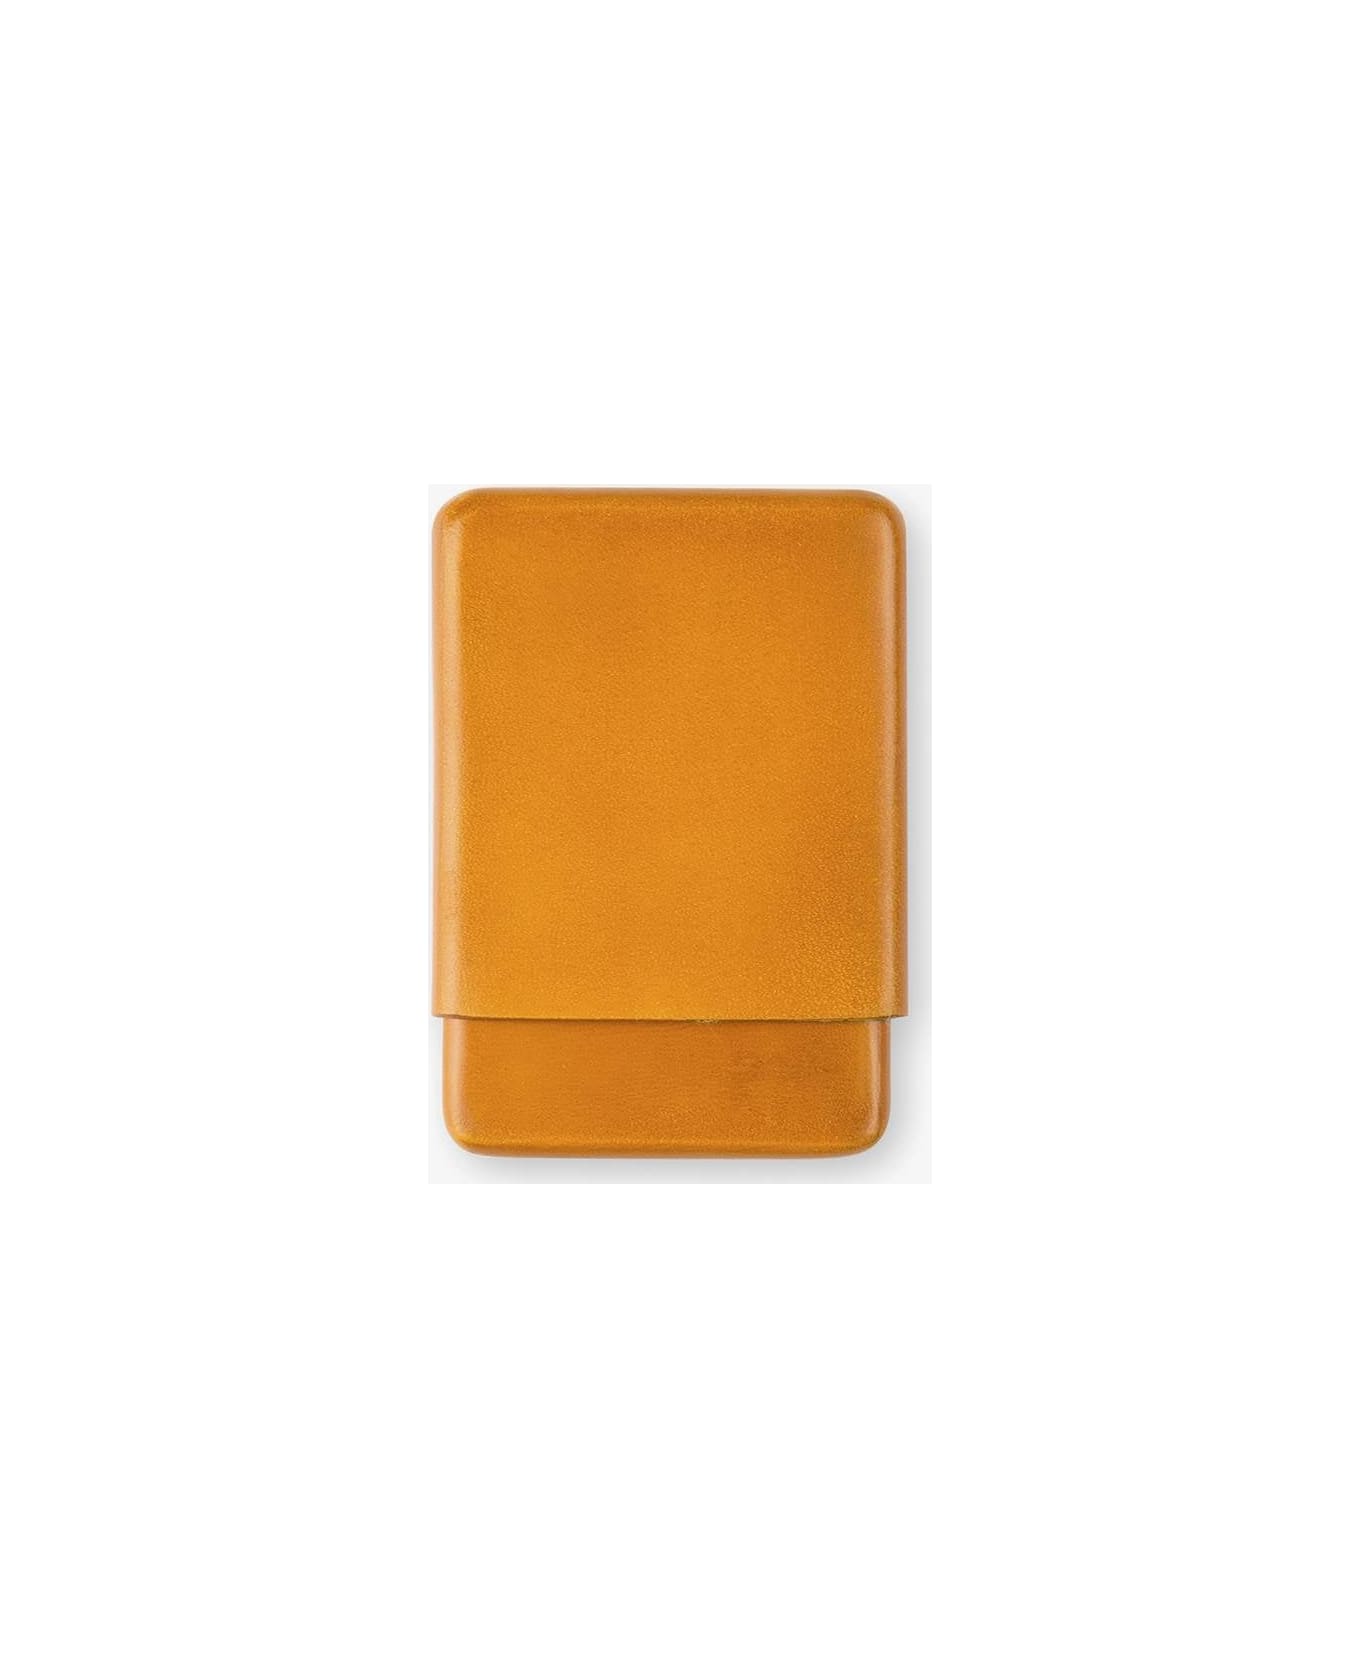 Larusmiani Cardholder Wallet - Goldenrod 財布